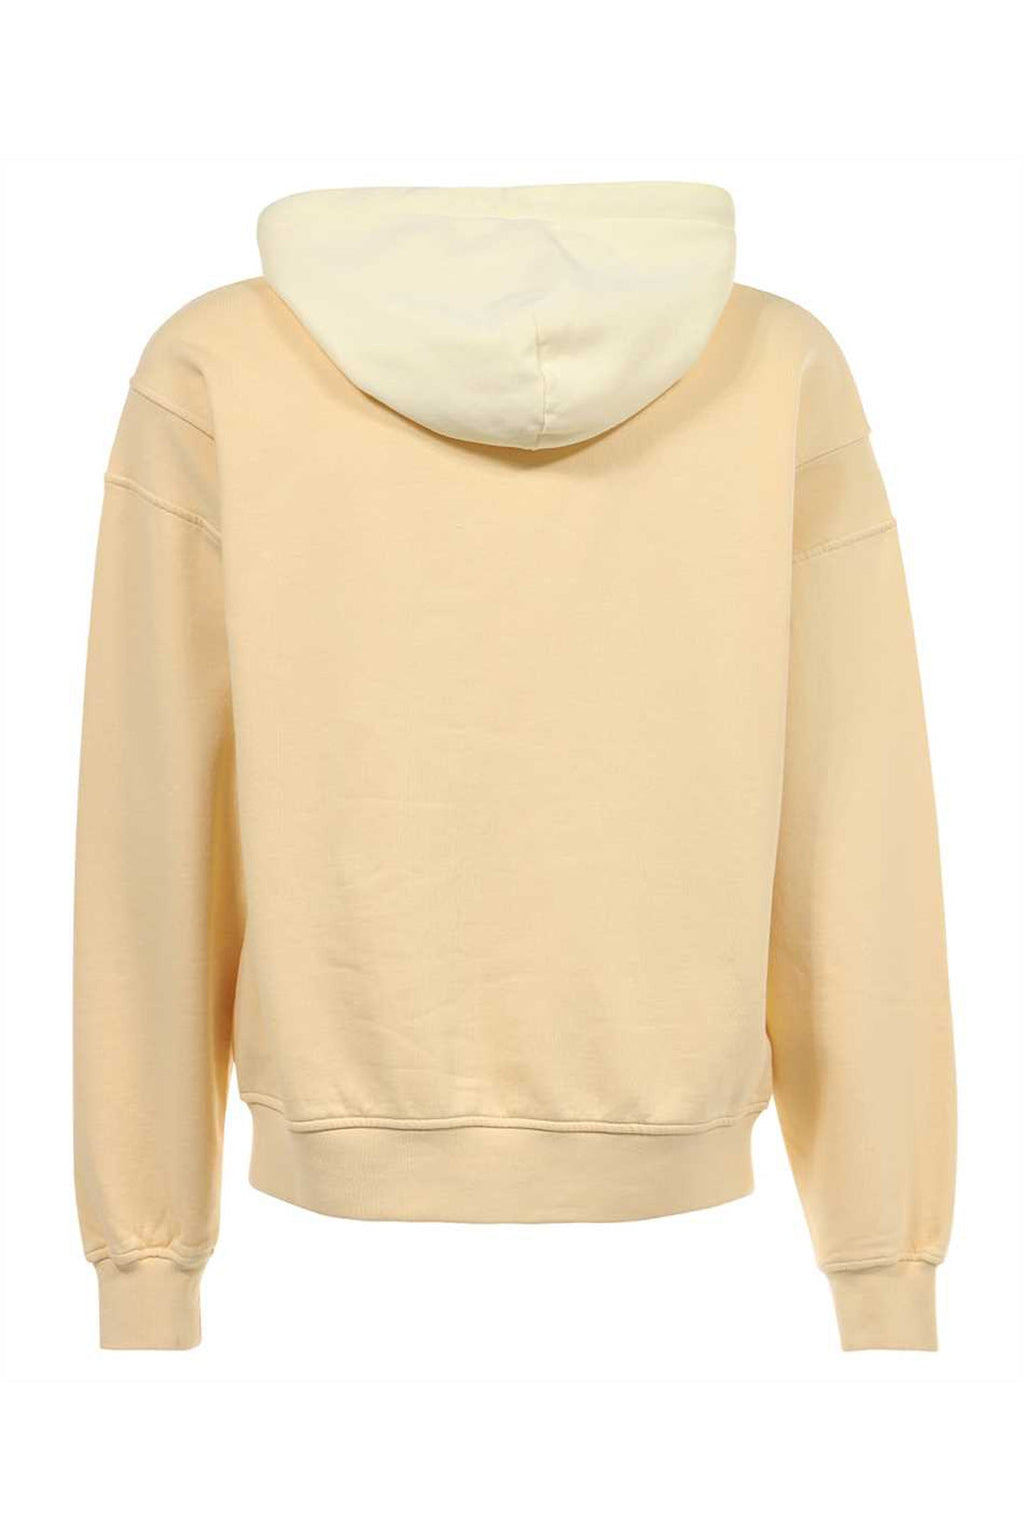 AMBUSH-OUTLET-SALE-Cotton hoodie-ARCHIVIST